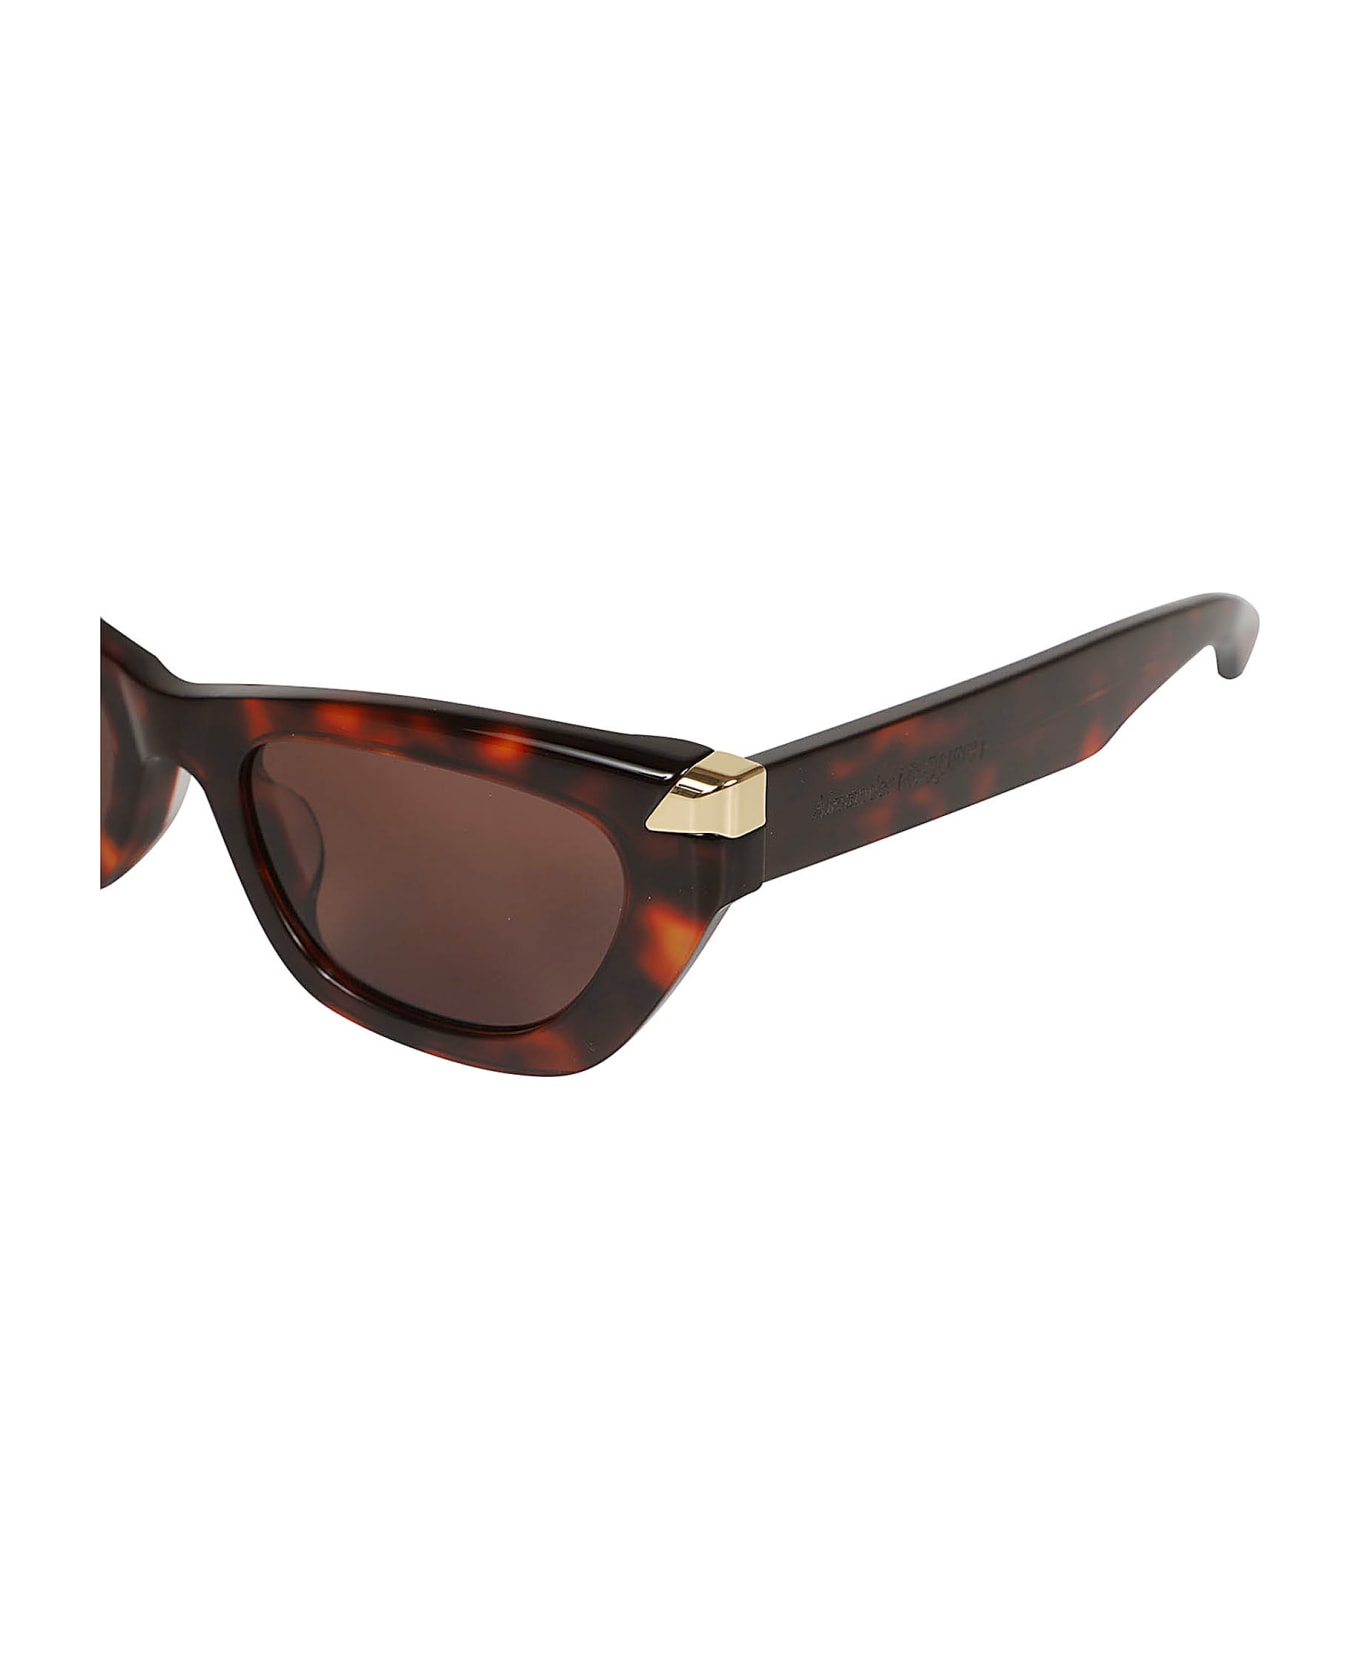 Alexander McQueen Eyewear Tortoiseshell Sunglasses - Havana Havana Brown